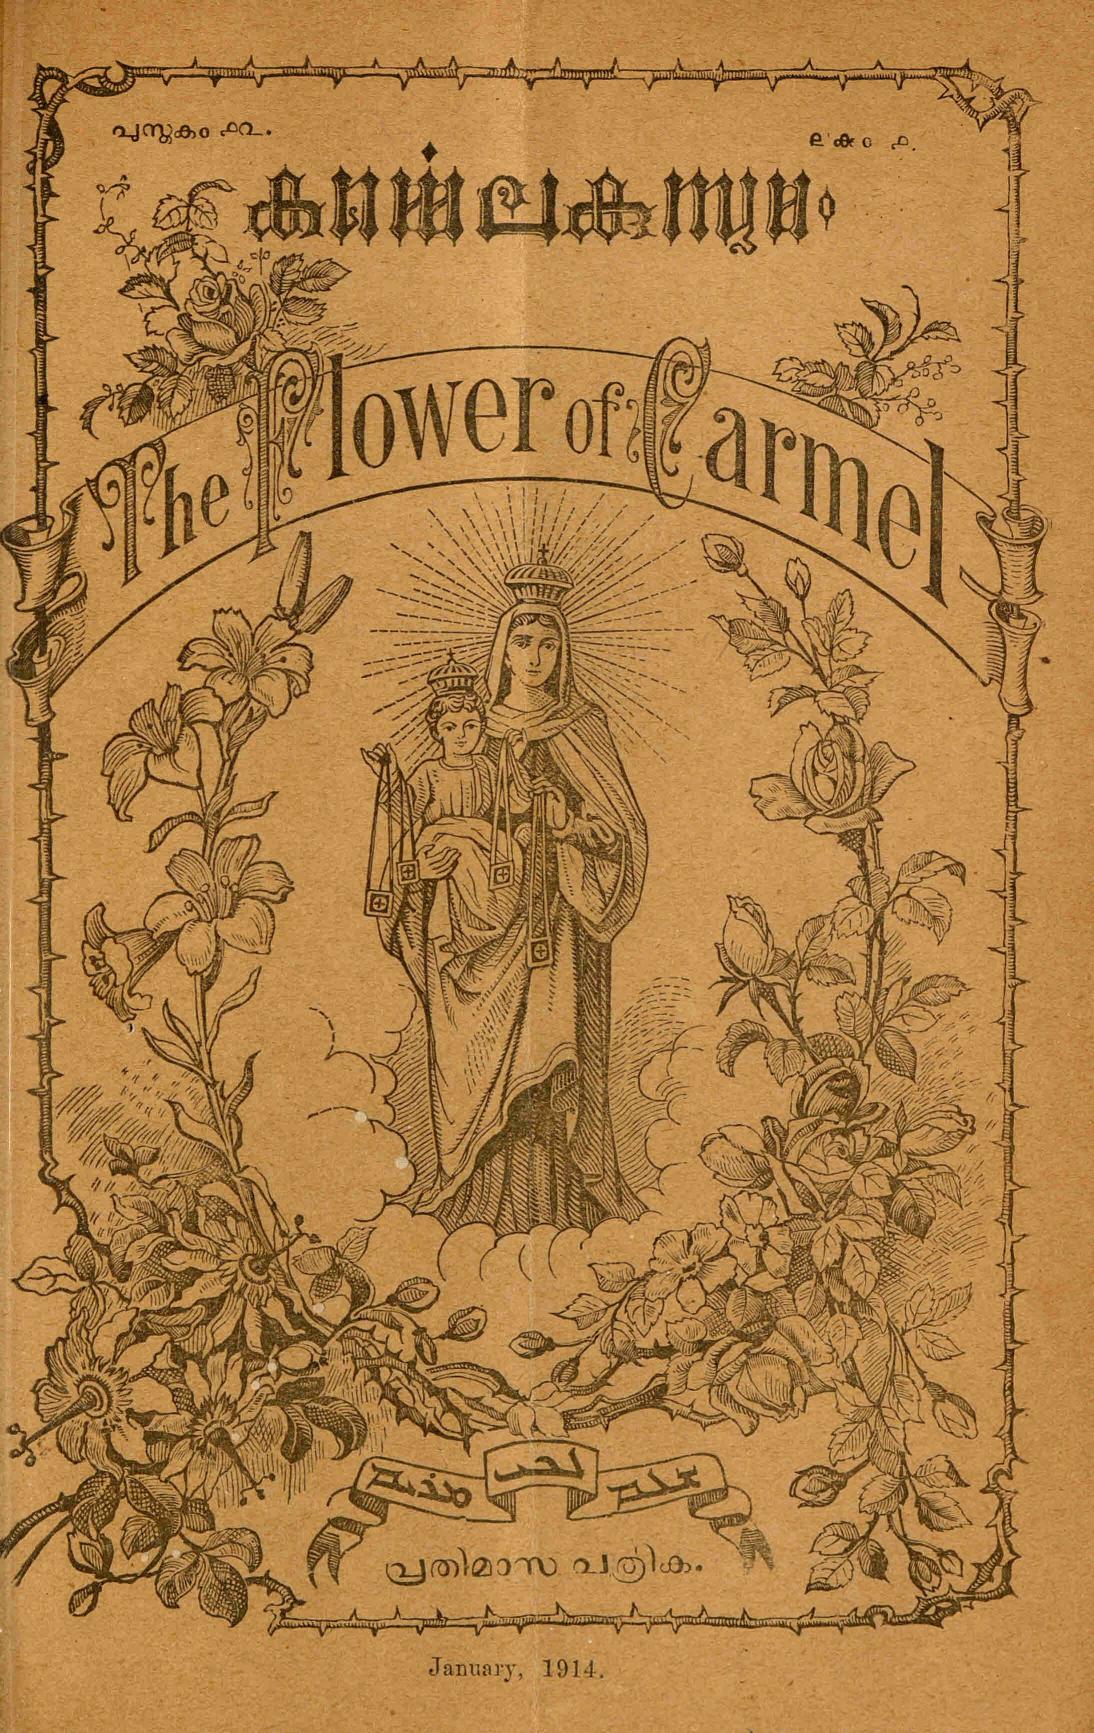 1914– കൎമ്മെലകുസുമം മാസികയുടെ പതിനൊന്ന് ലക്കങ്ങൾ